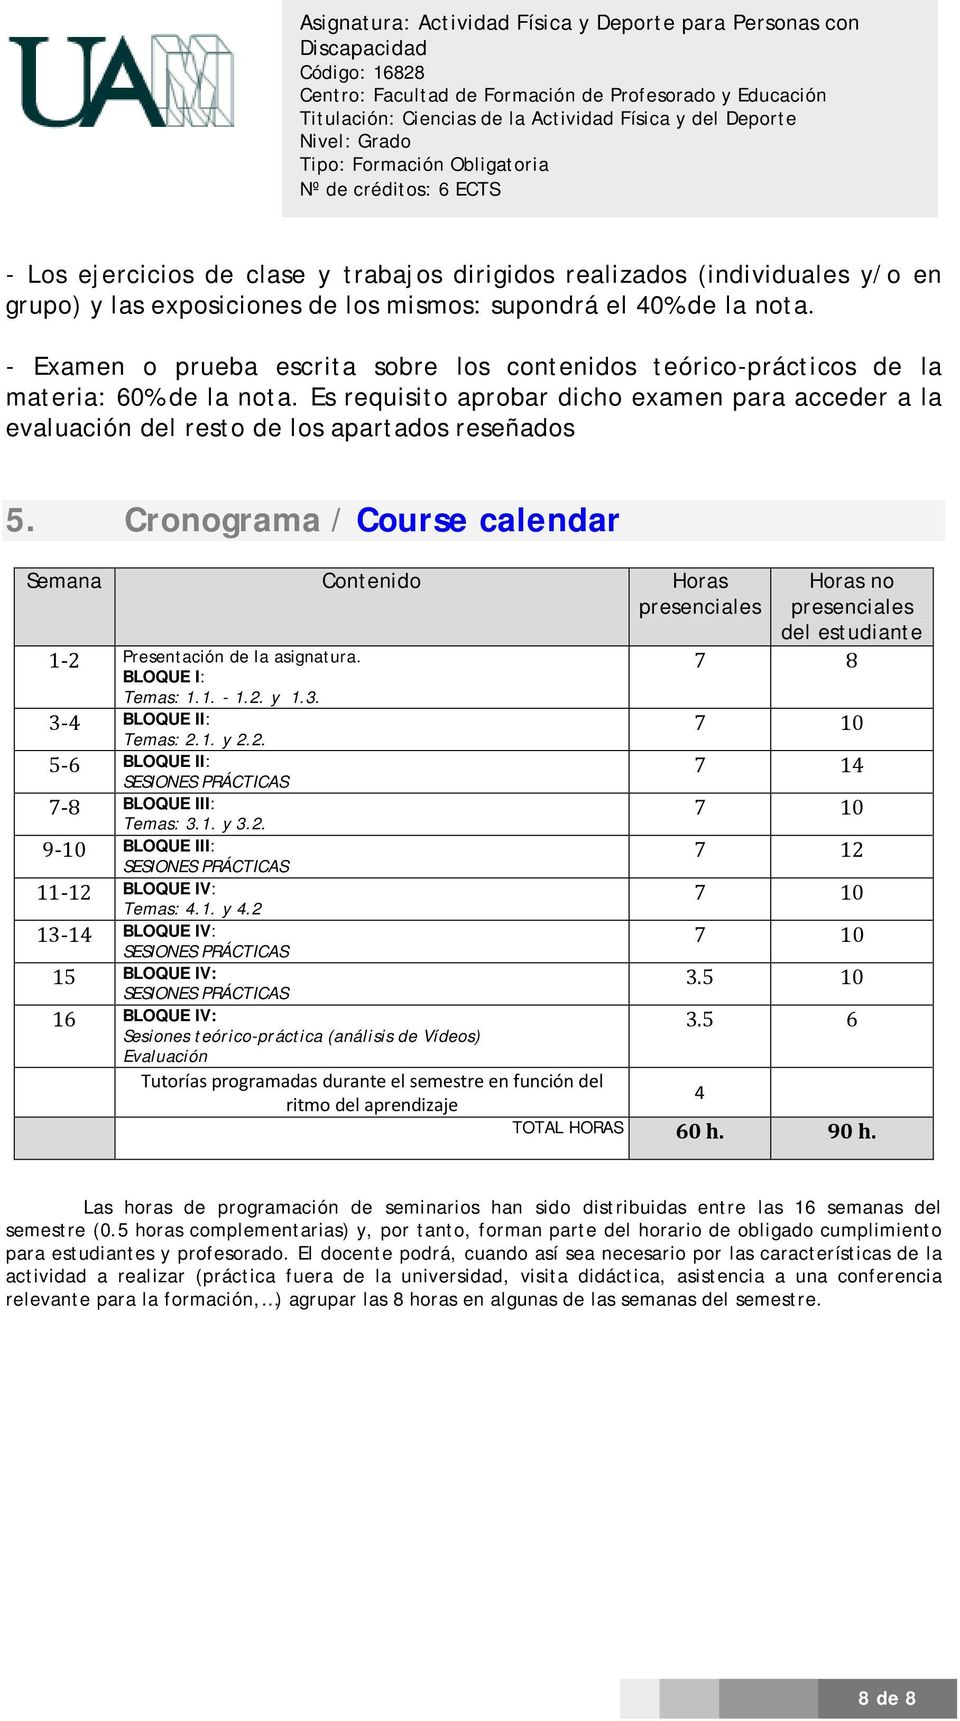 Cronograma / Course calendar Semana Contenido Horas presenciales Horas no presenciales del estudiante 1-2 Presentación de la asignatura. BLOQUE I: 7 8 Temas: 1.1. - 1.2. y 1.3.